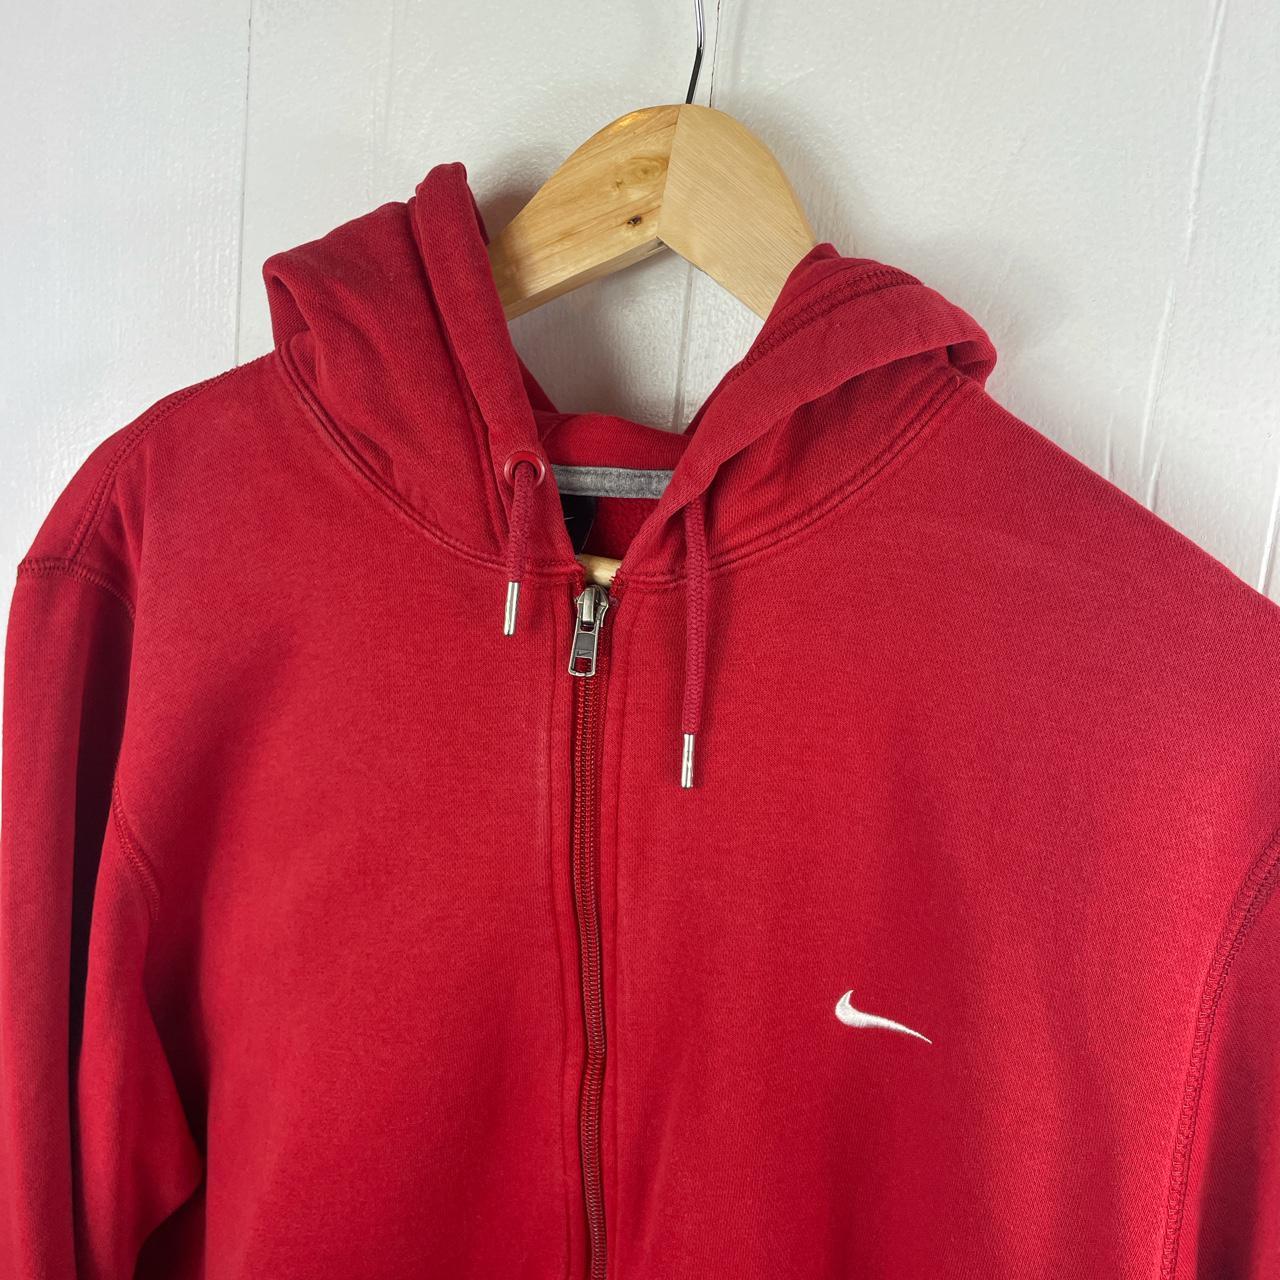 Nike vintage full zip hoodie in red with white... - Depop